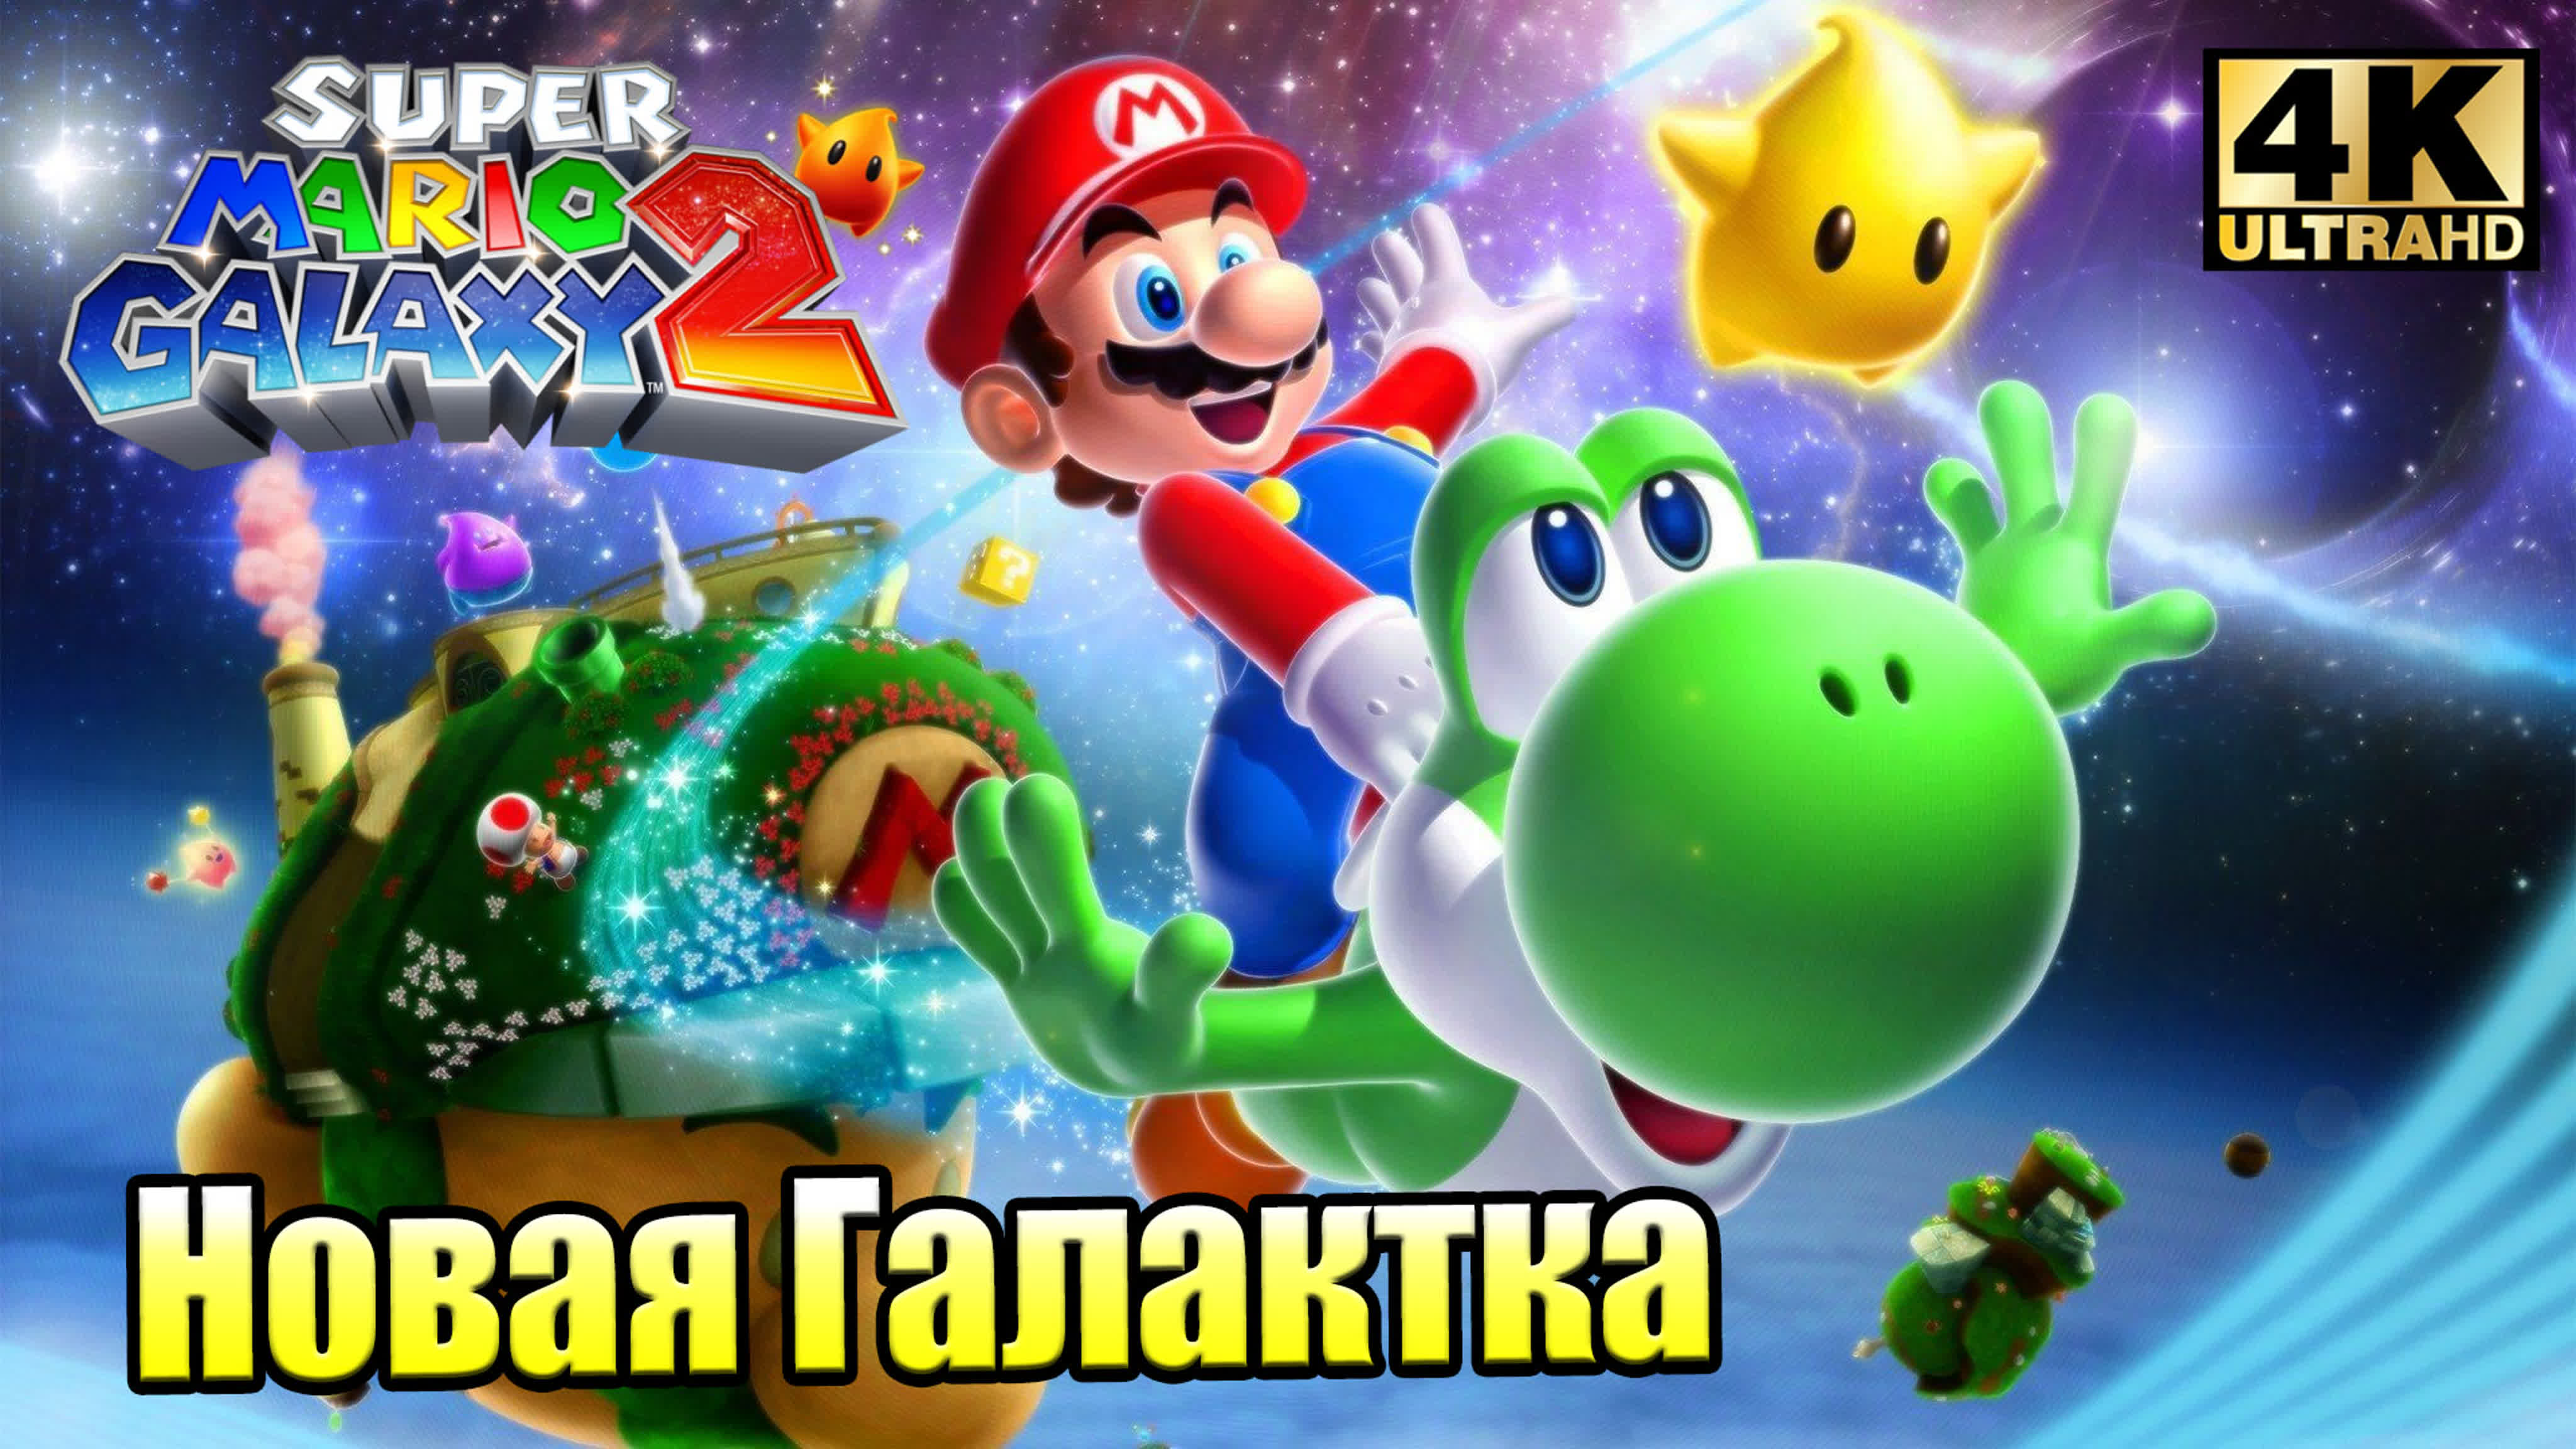 Super Mario Galaxy 2 (Wii) 4K